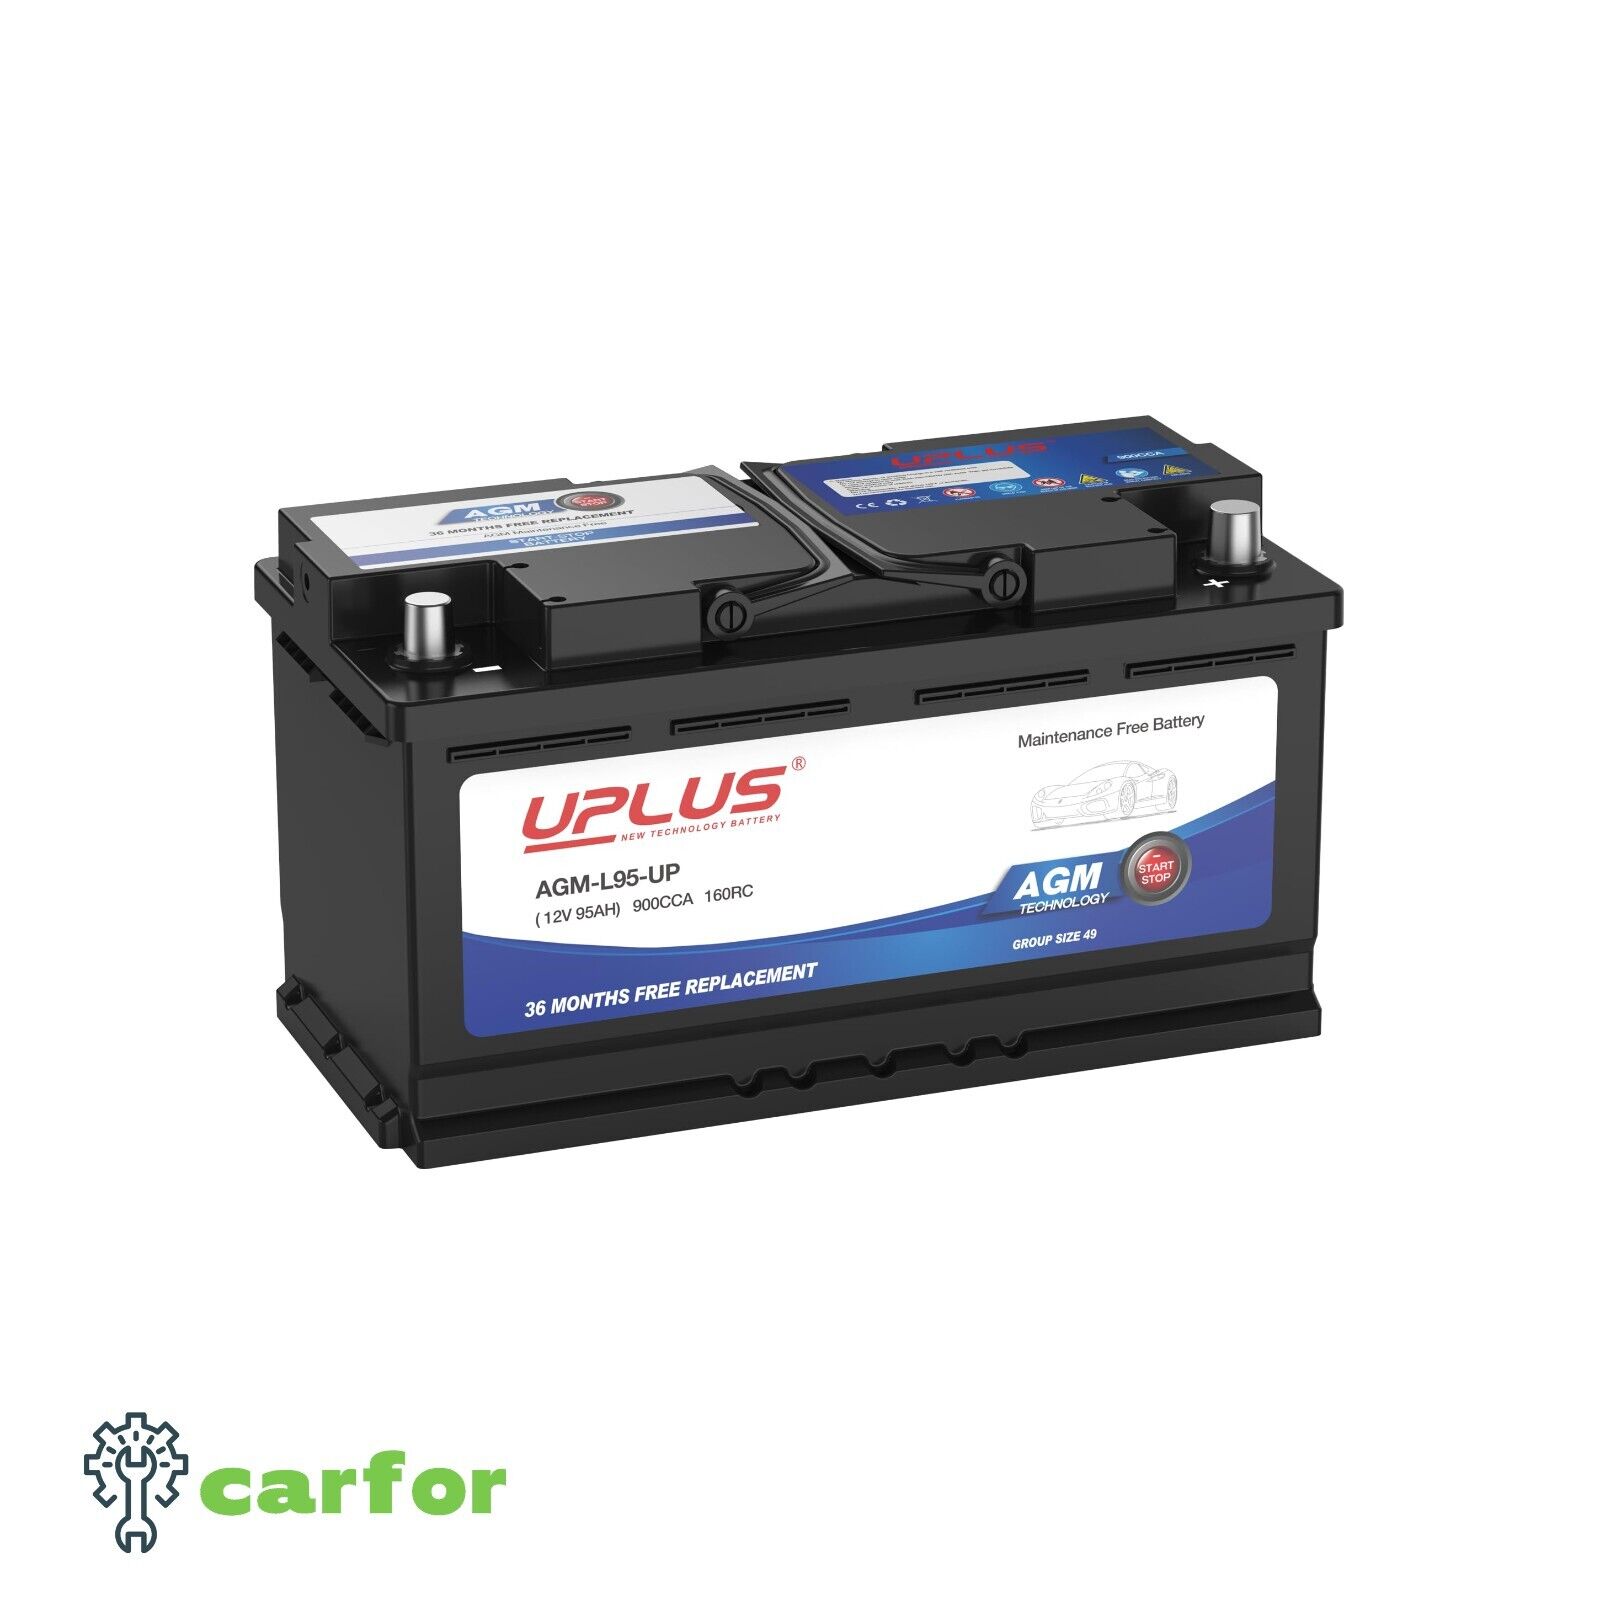 UPLUS BCI Group 48 Car Battery, AGM-L70-M Maintenance Free 12V 70Ah Premium AGM